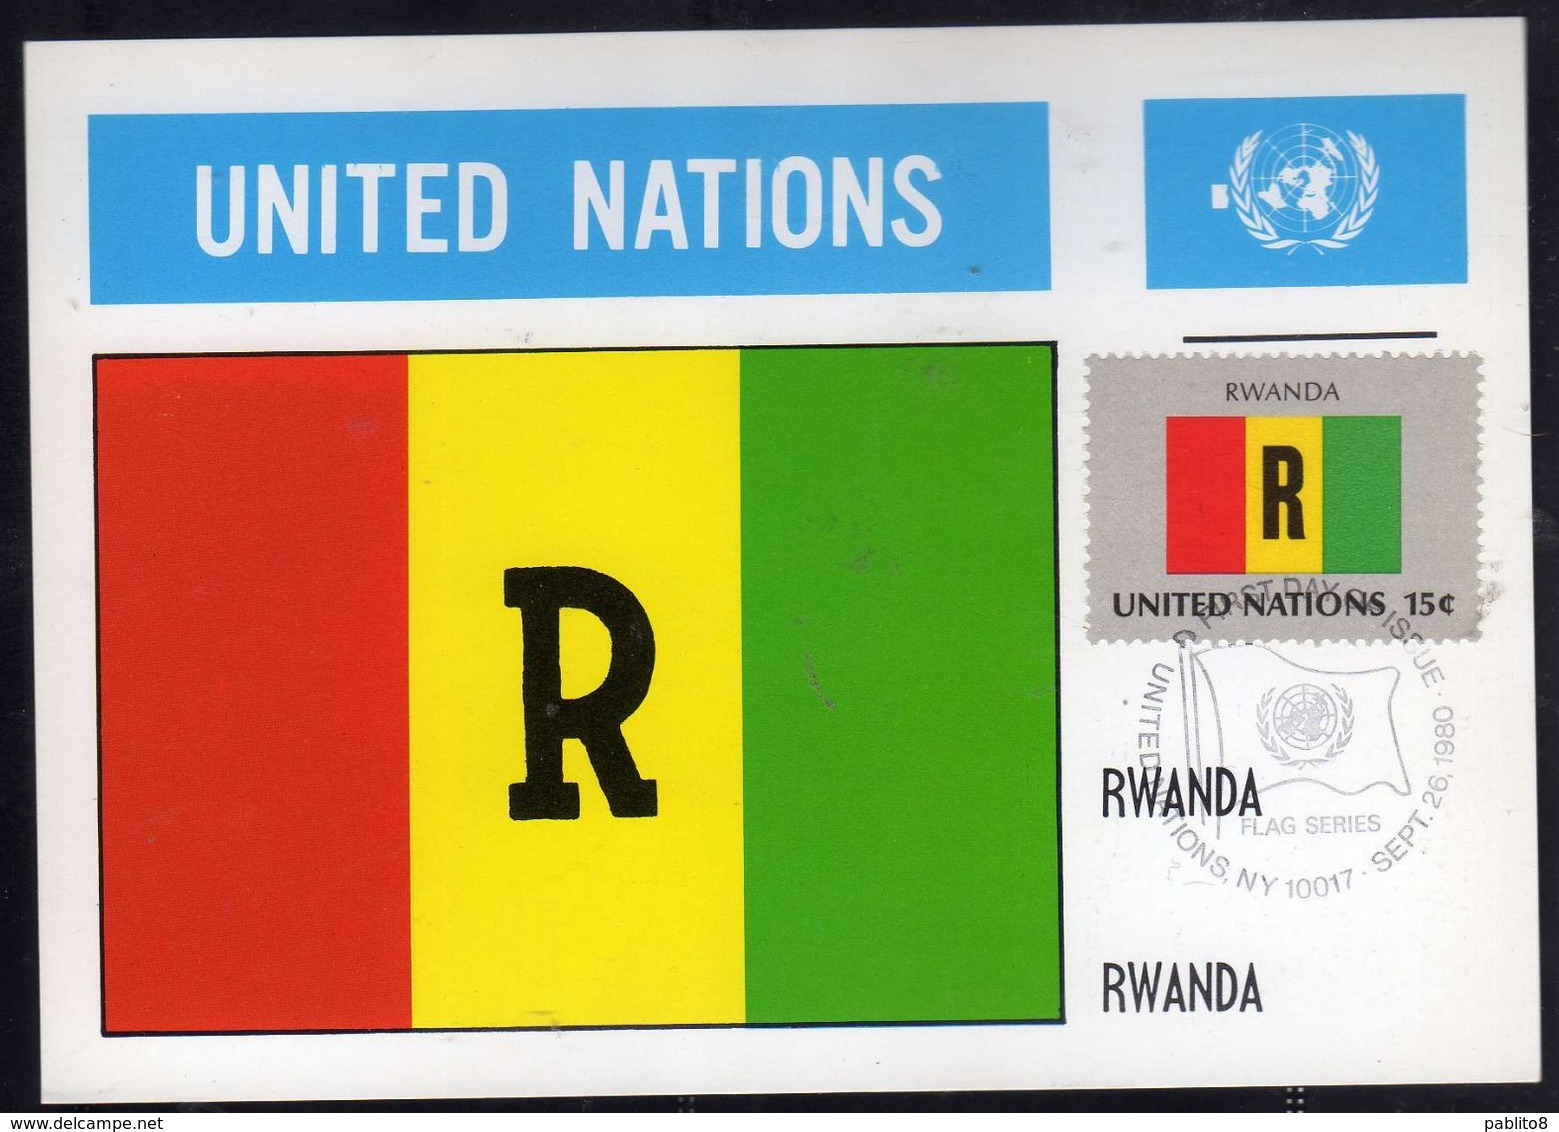 UNITED NATIONS NEW YORK ONU UN UNO 1980 FLAGS RWANDA RUANDA FDC MAXI CARD CARTOLINA MAXIMUM - Cartoline Maximum